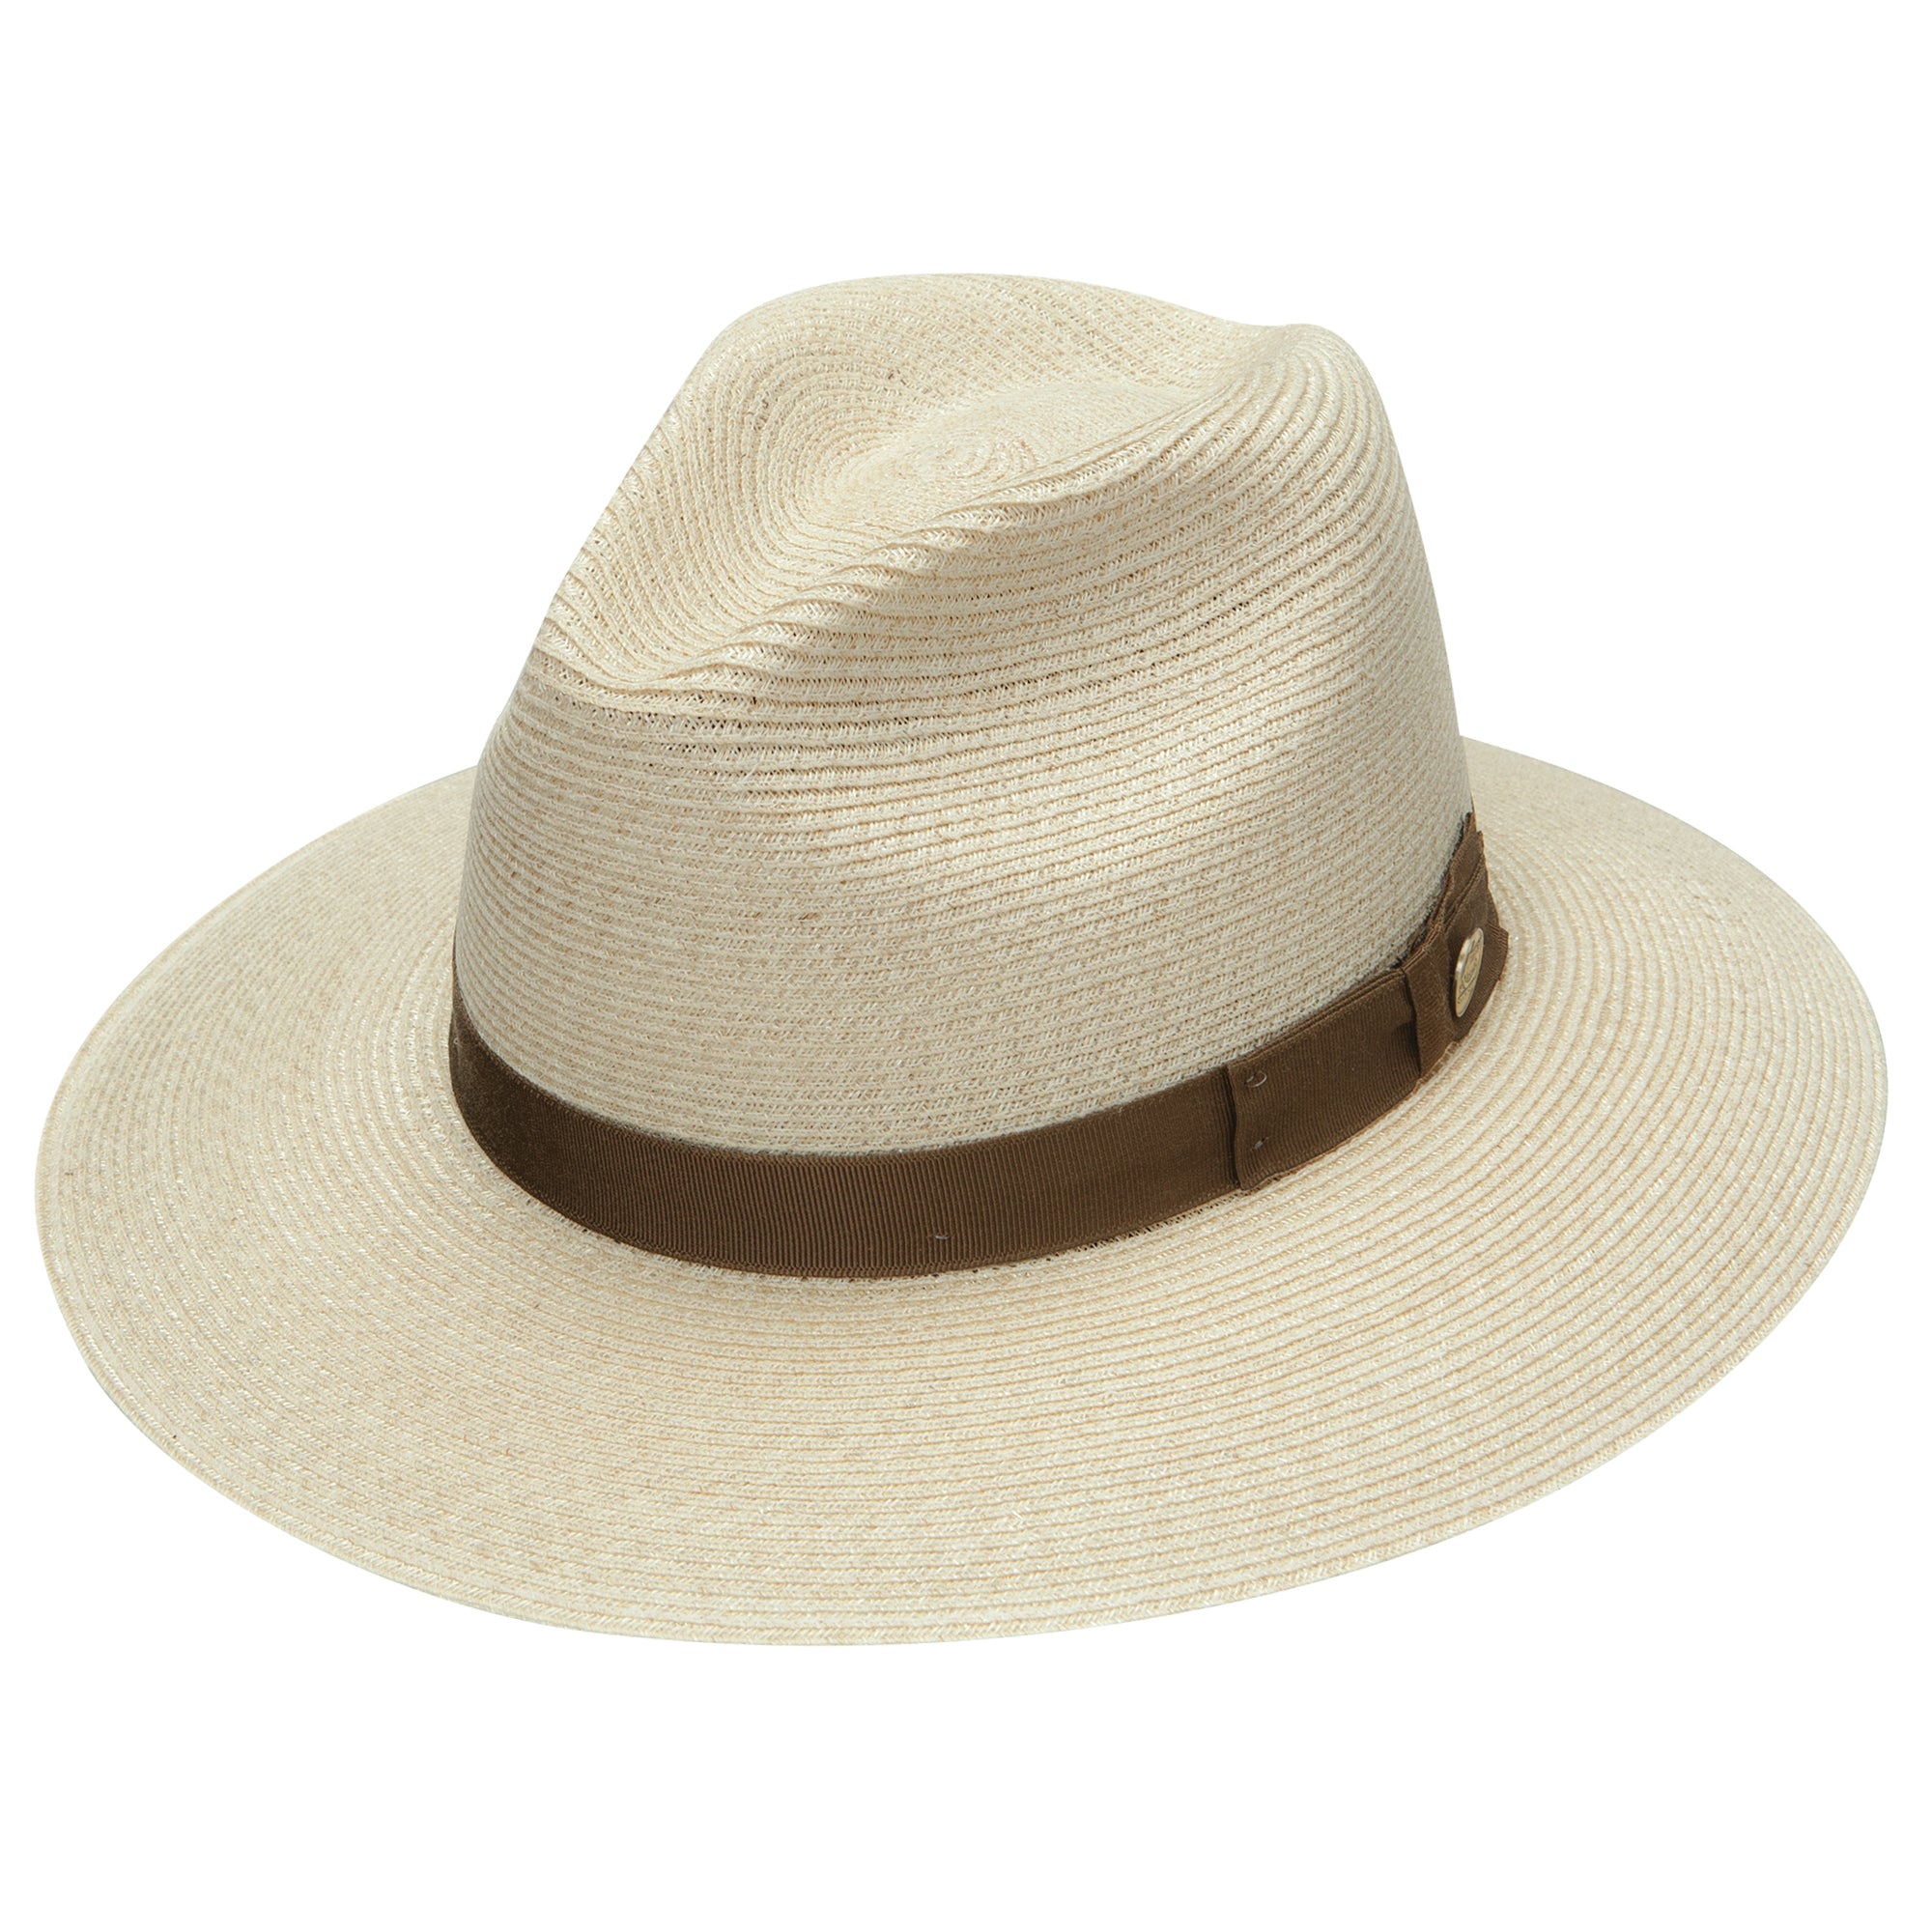 Stetson Sundowner Hemp Straw Hat